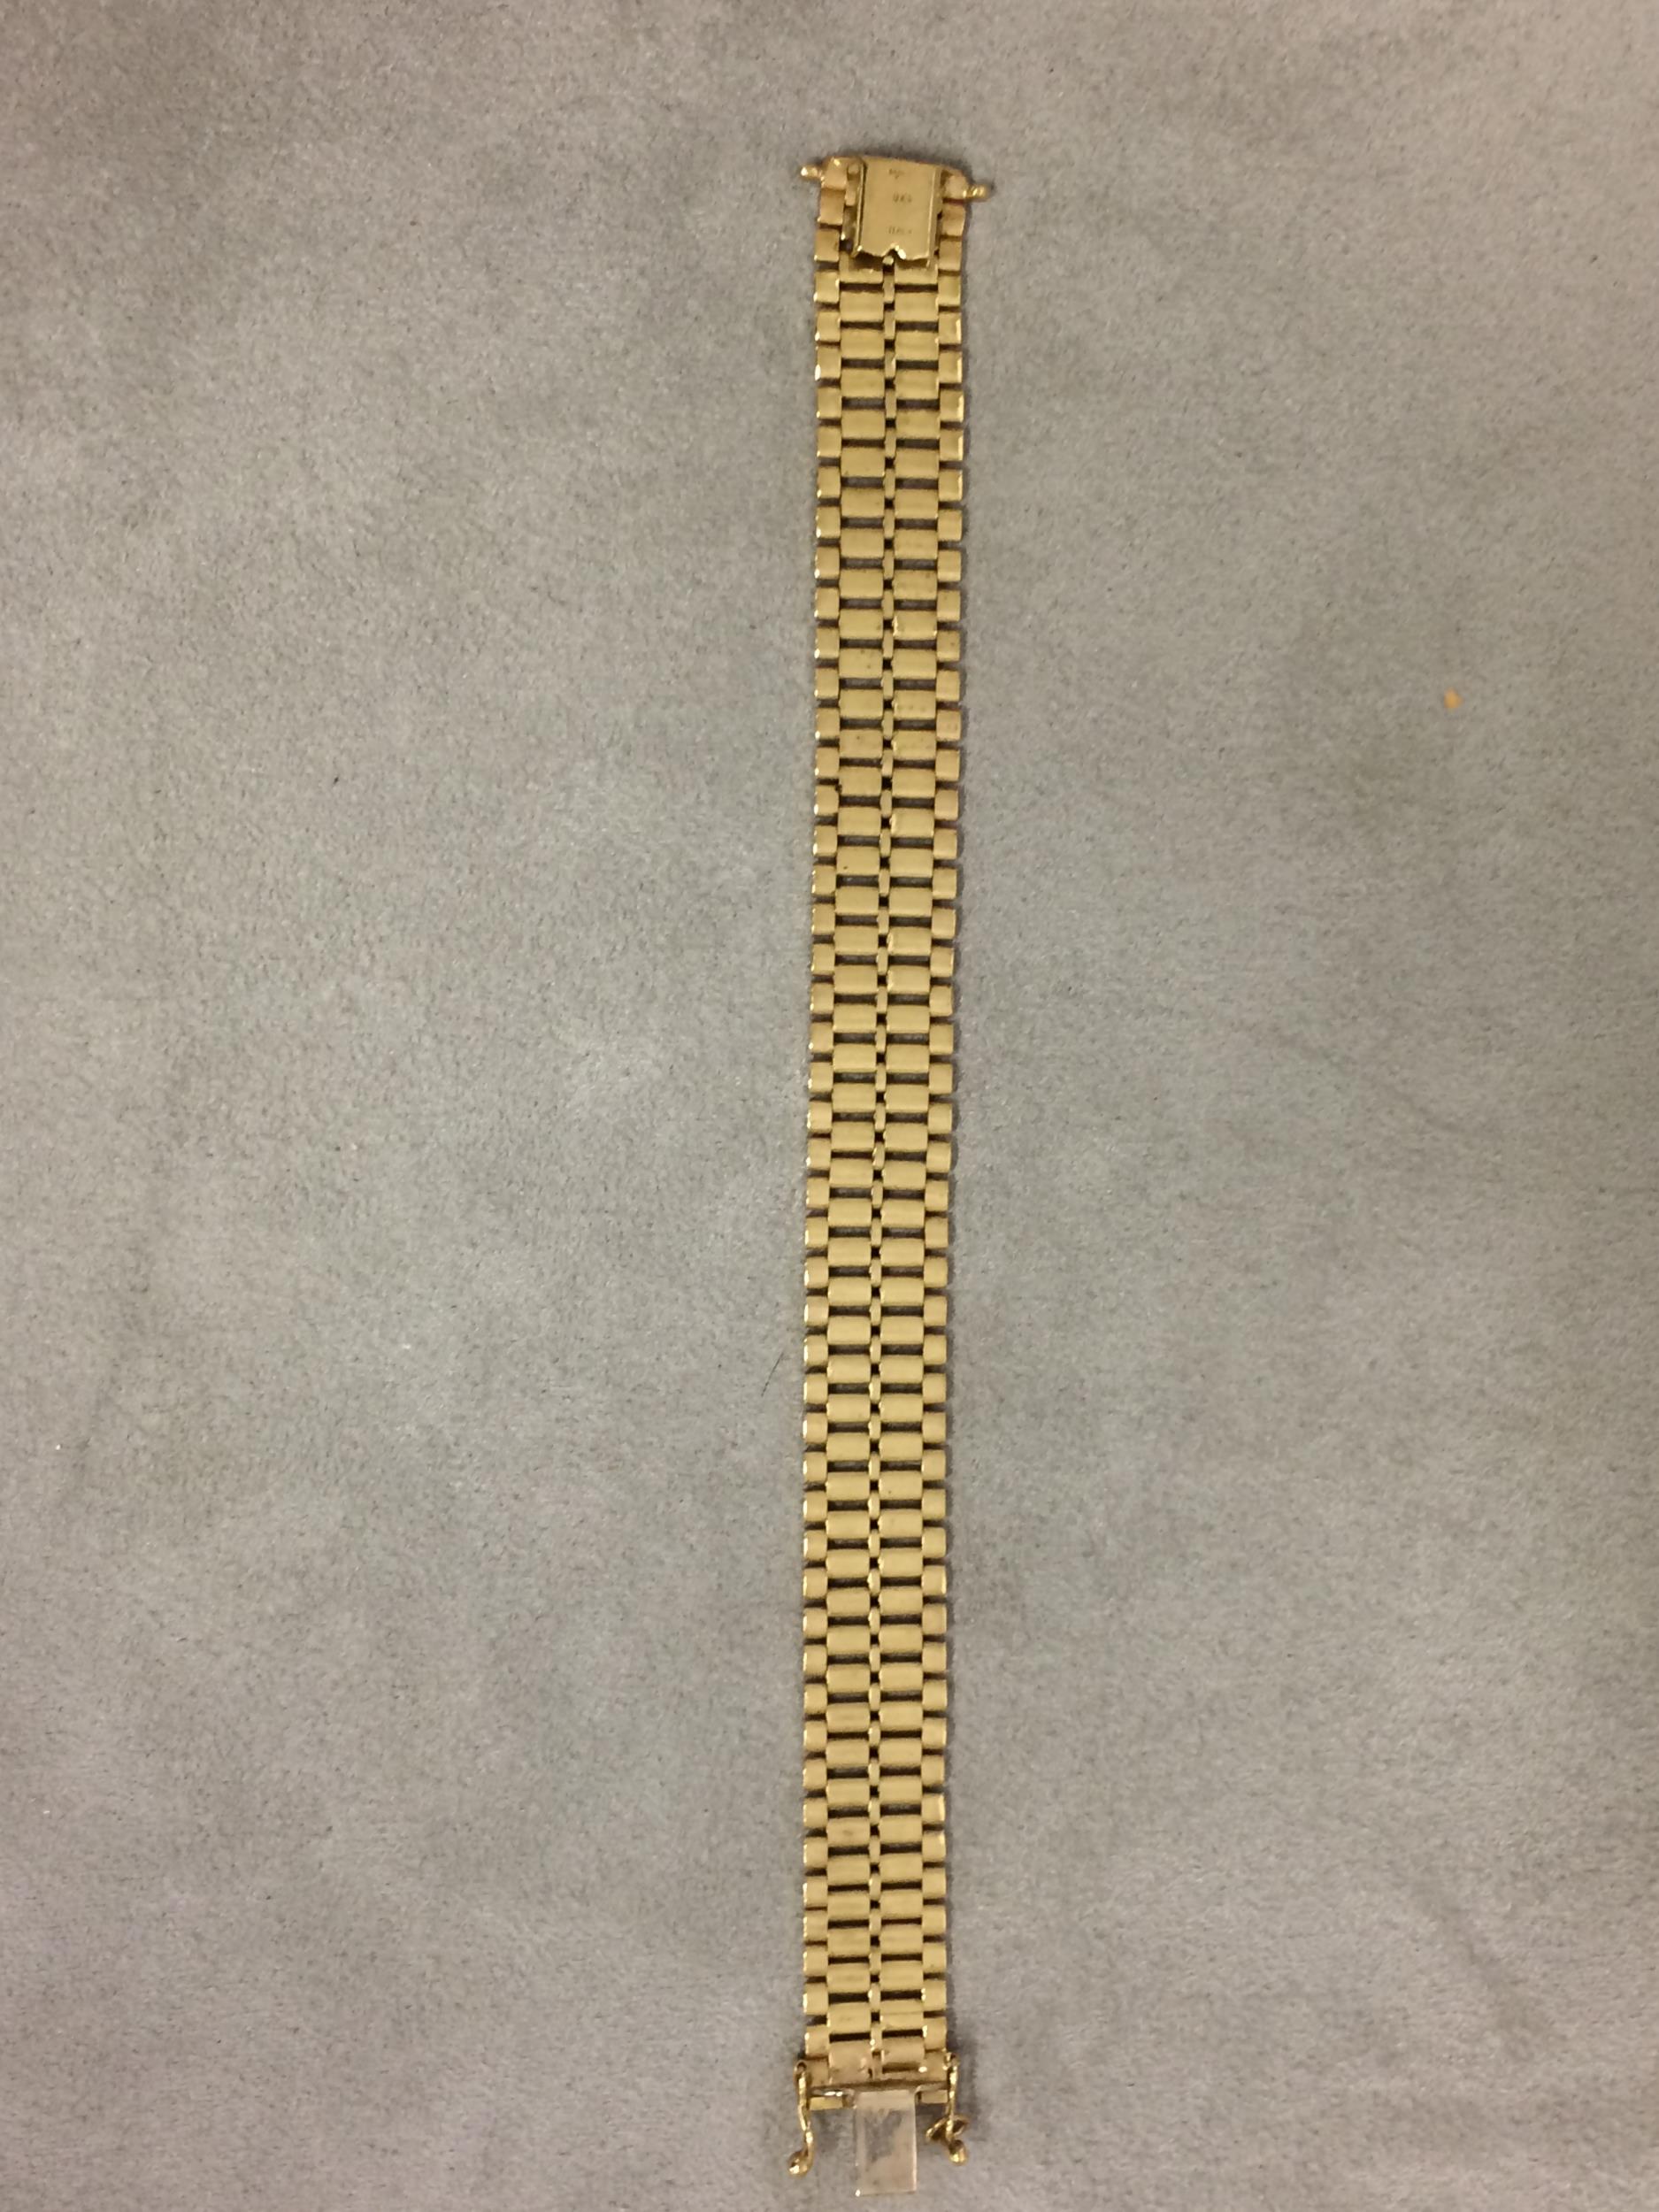 9 ct gold flat link bracelet, 17.4g, 16cm - Image 5 of 7